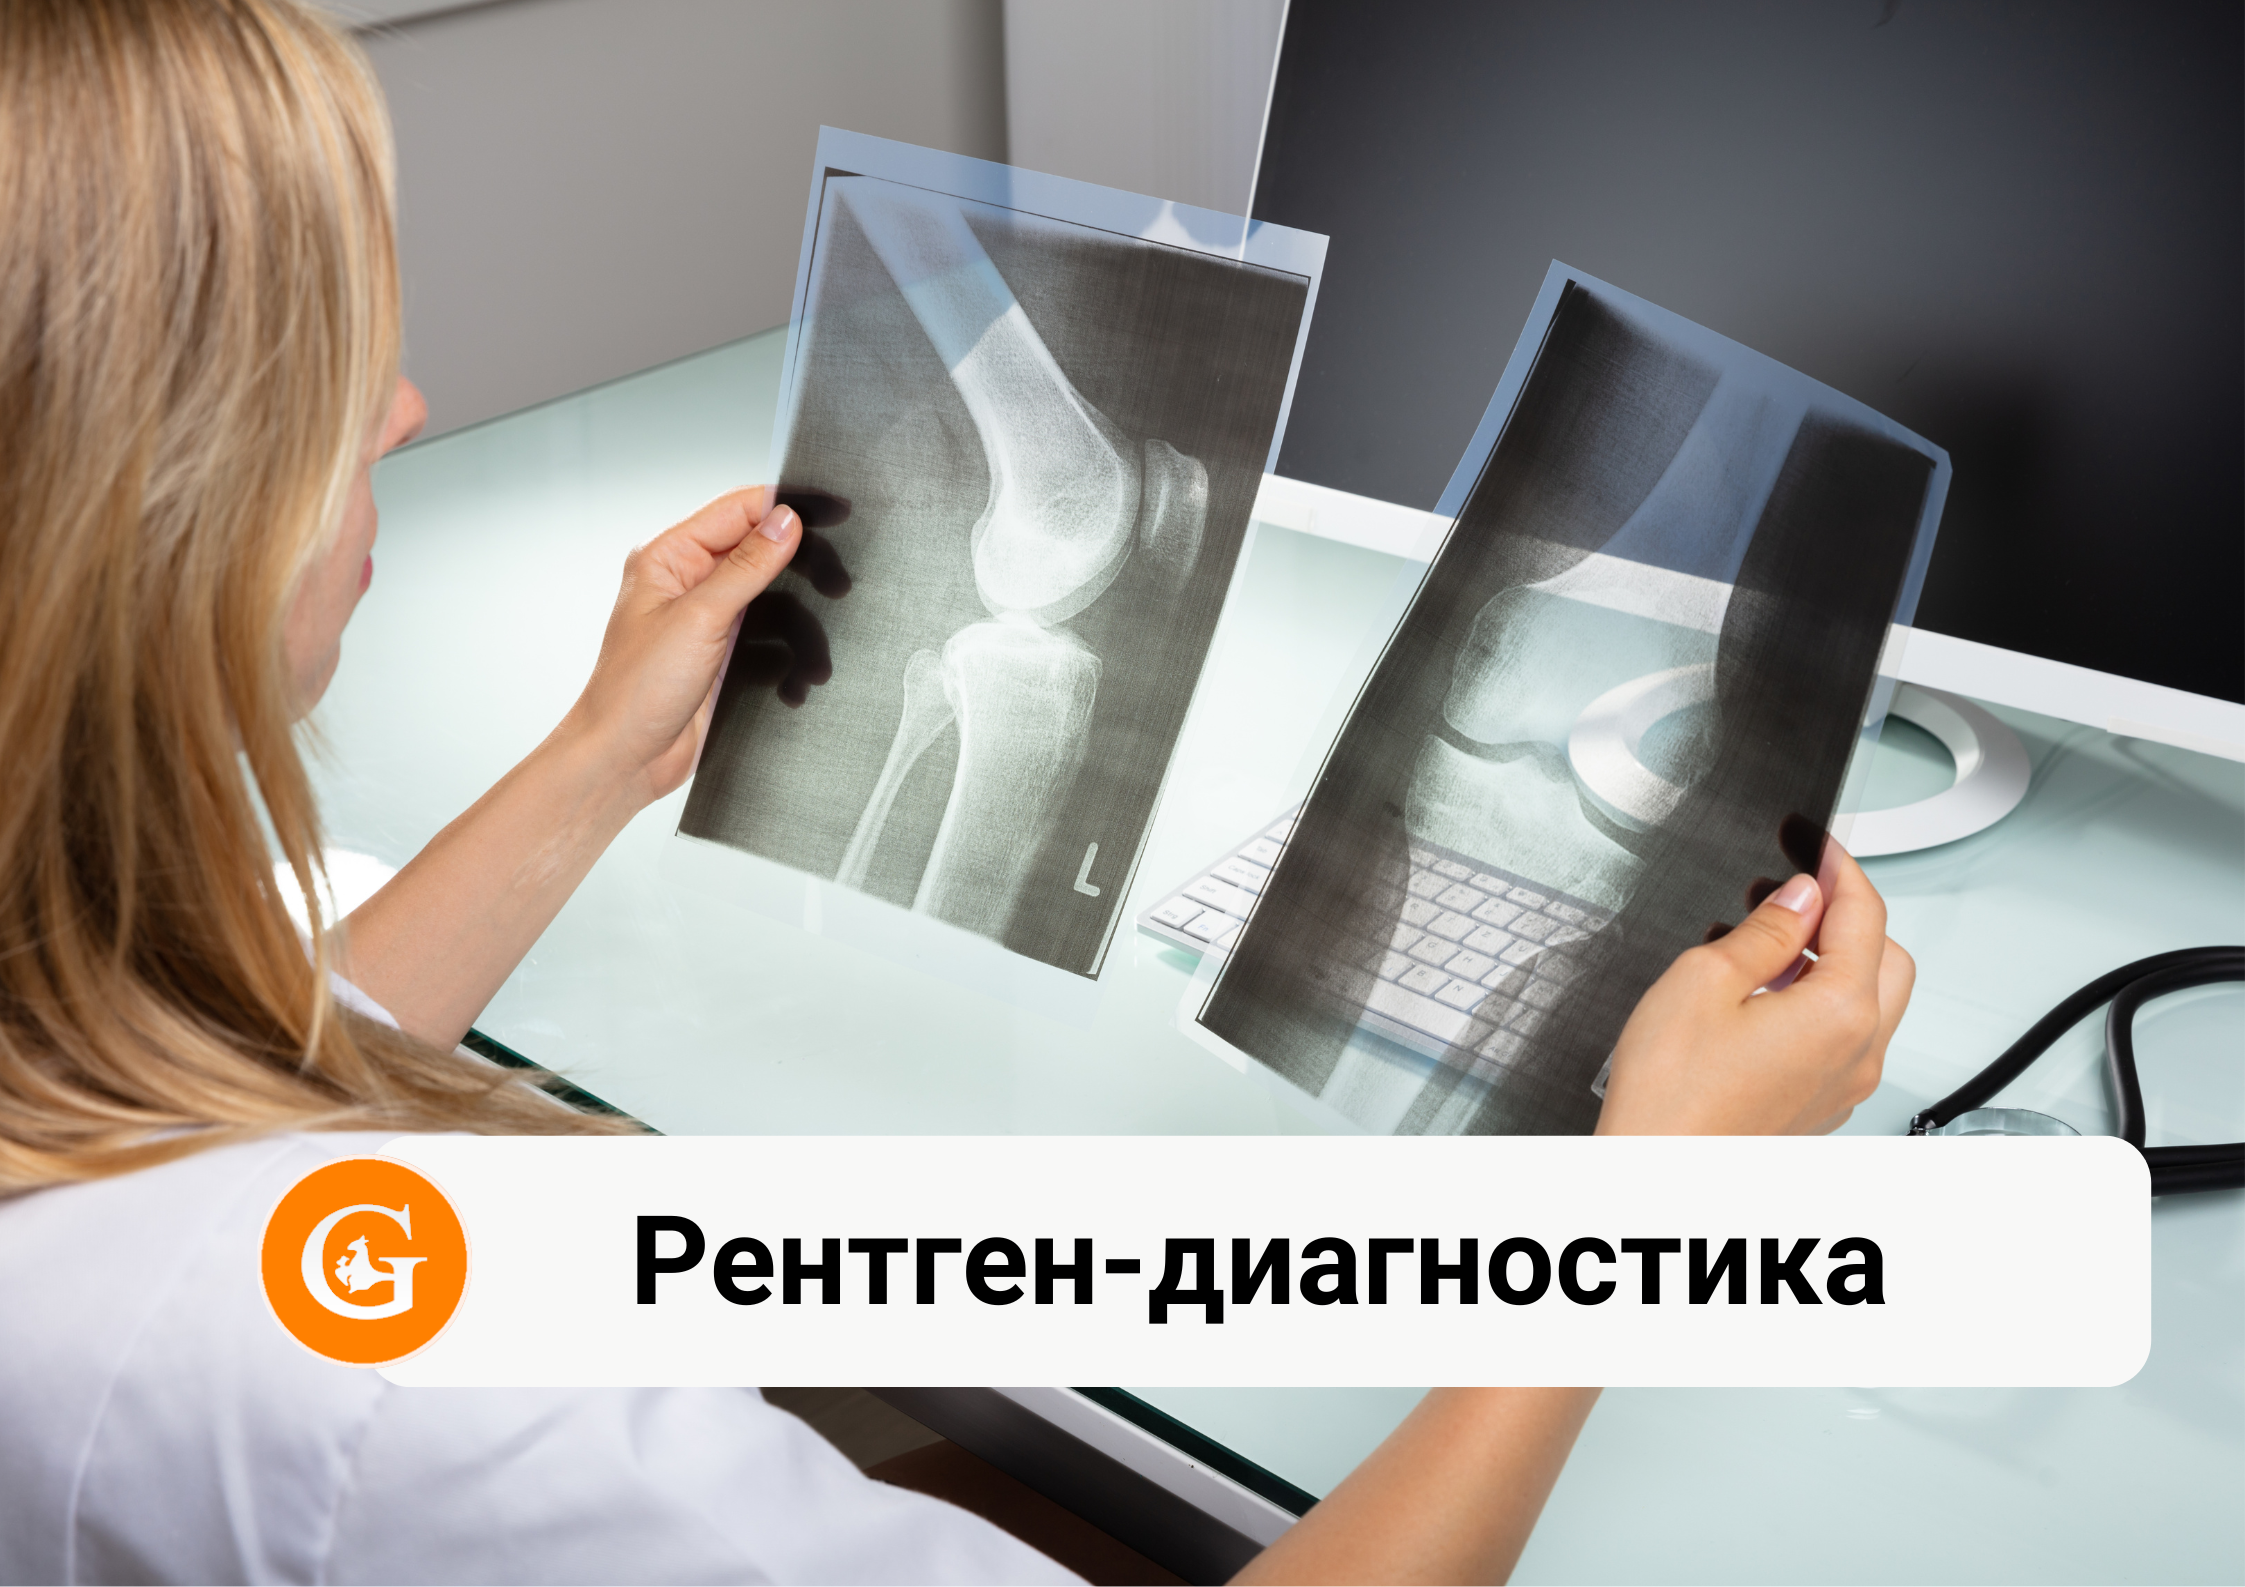 Рентген-диагностика костной и суставной системы